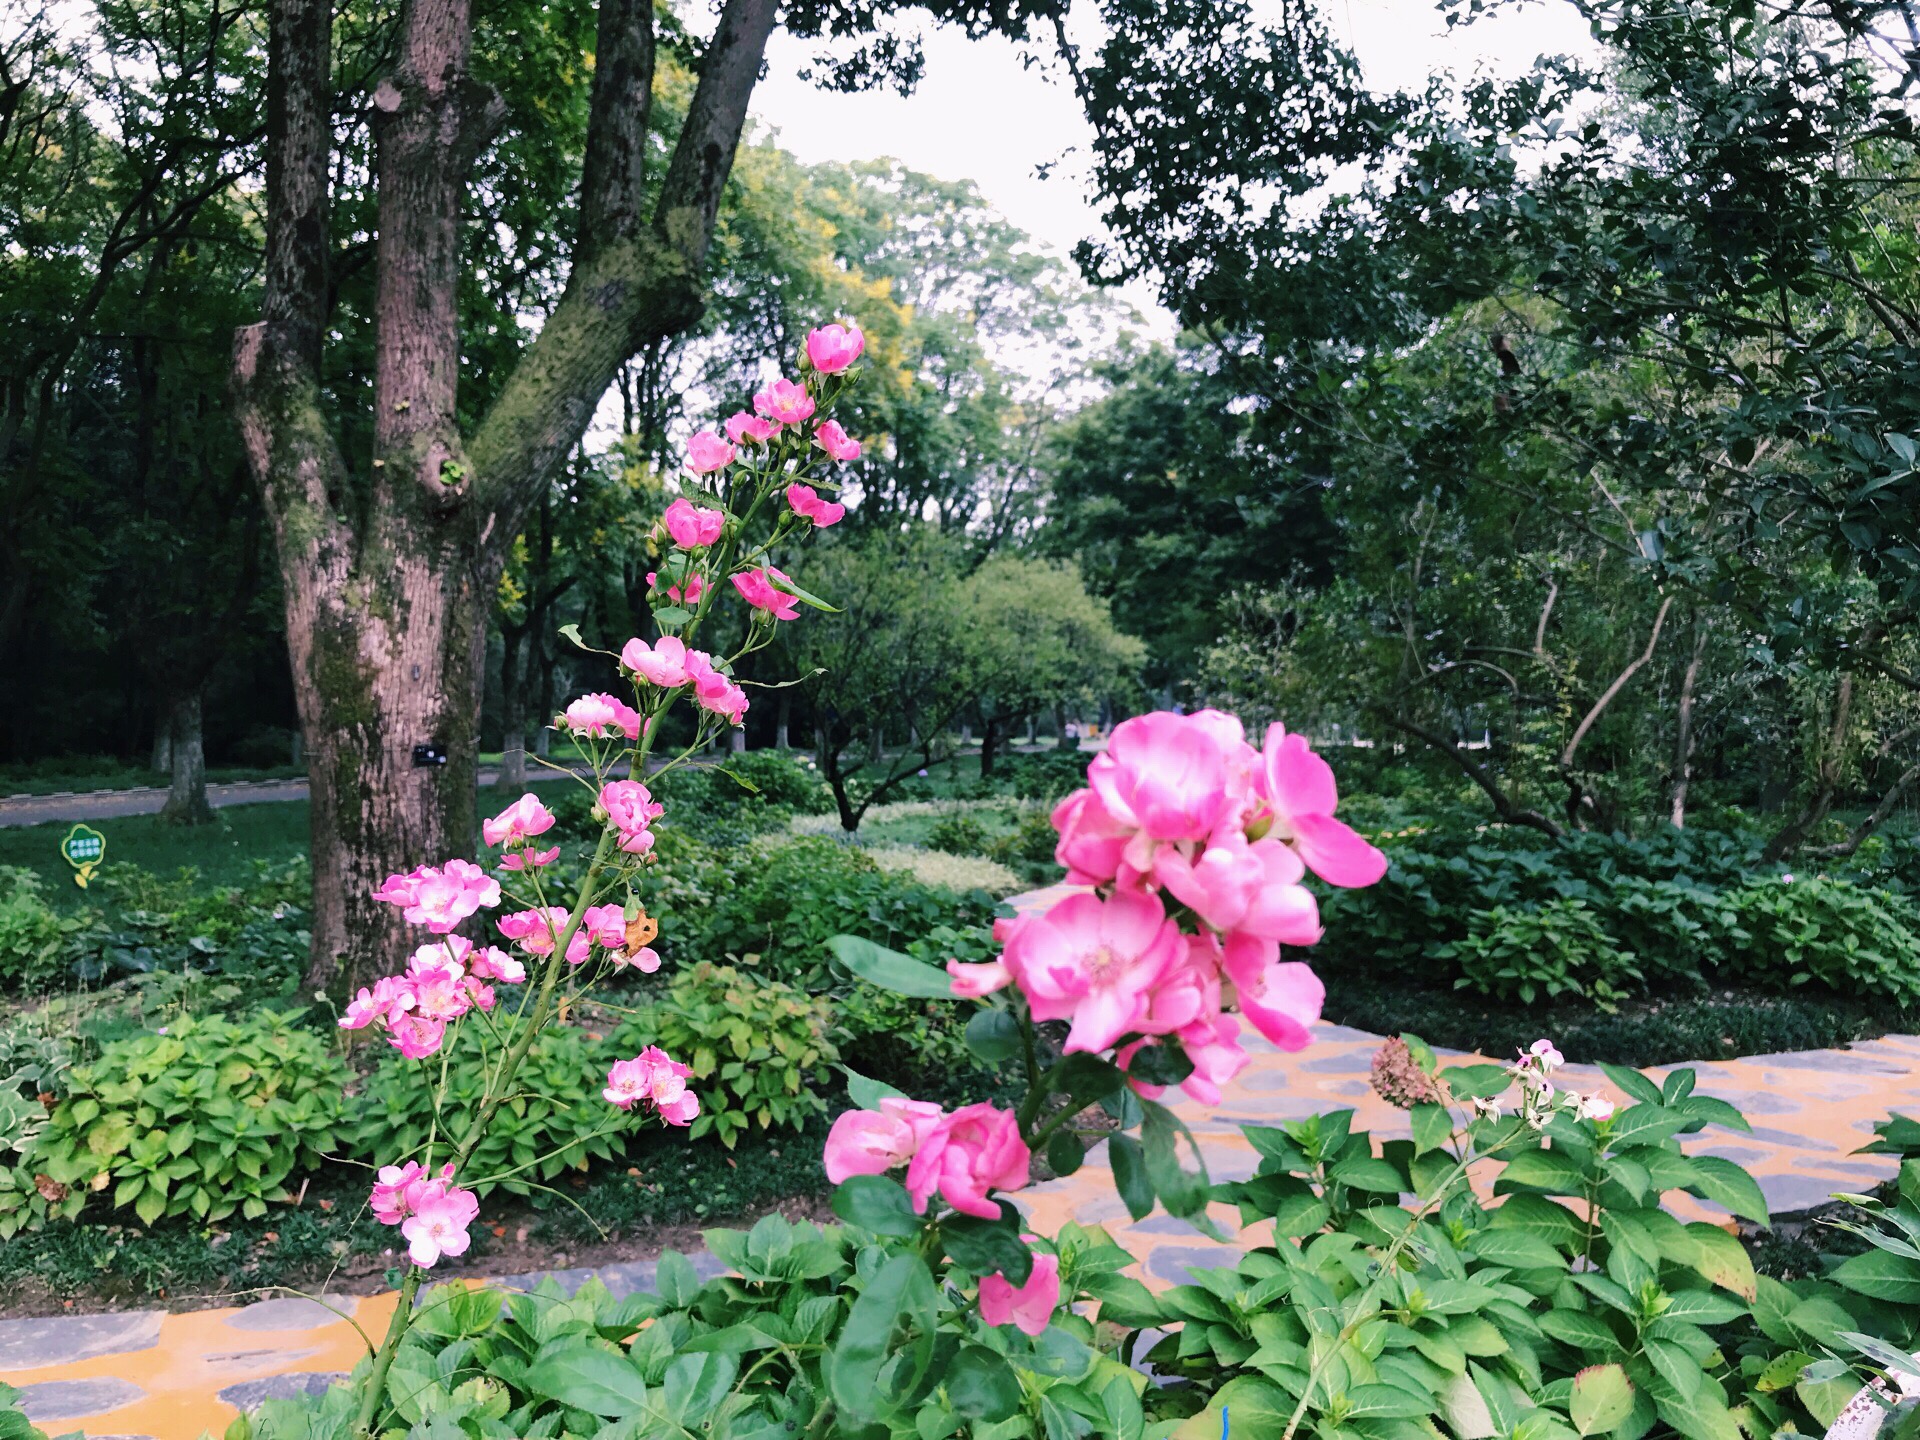 南京中山植物园第21届欧洲花卉展即将开幕